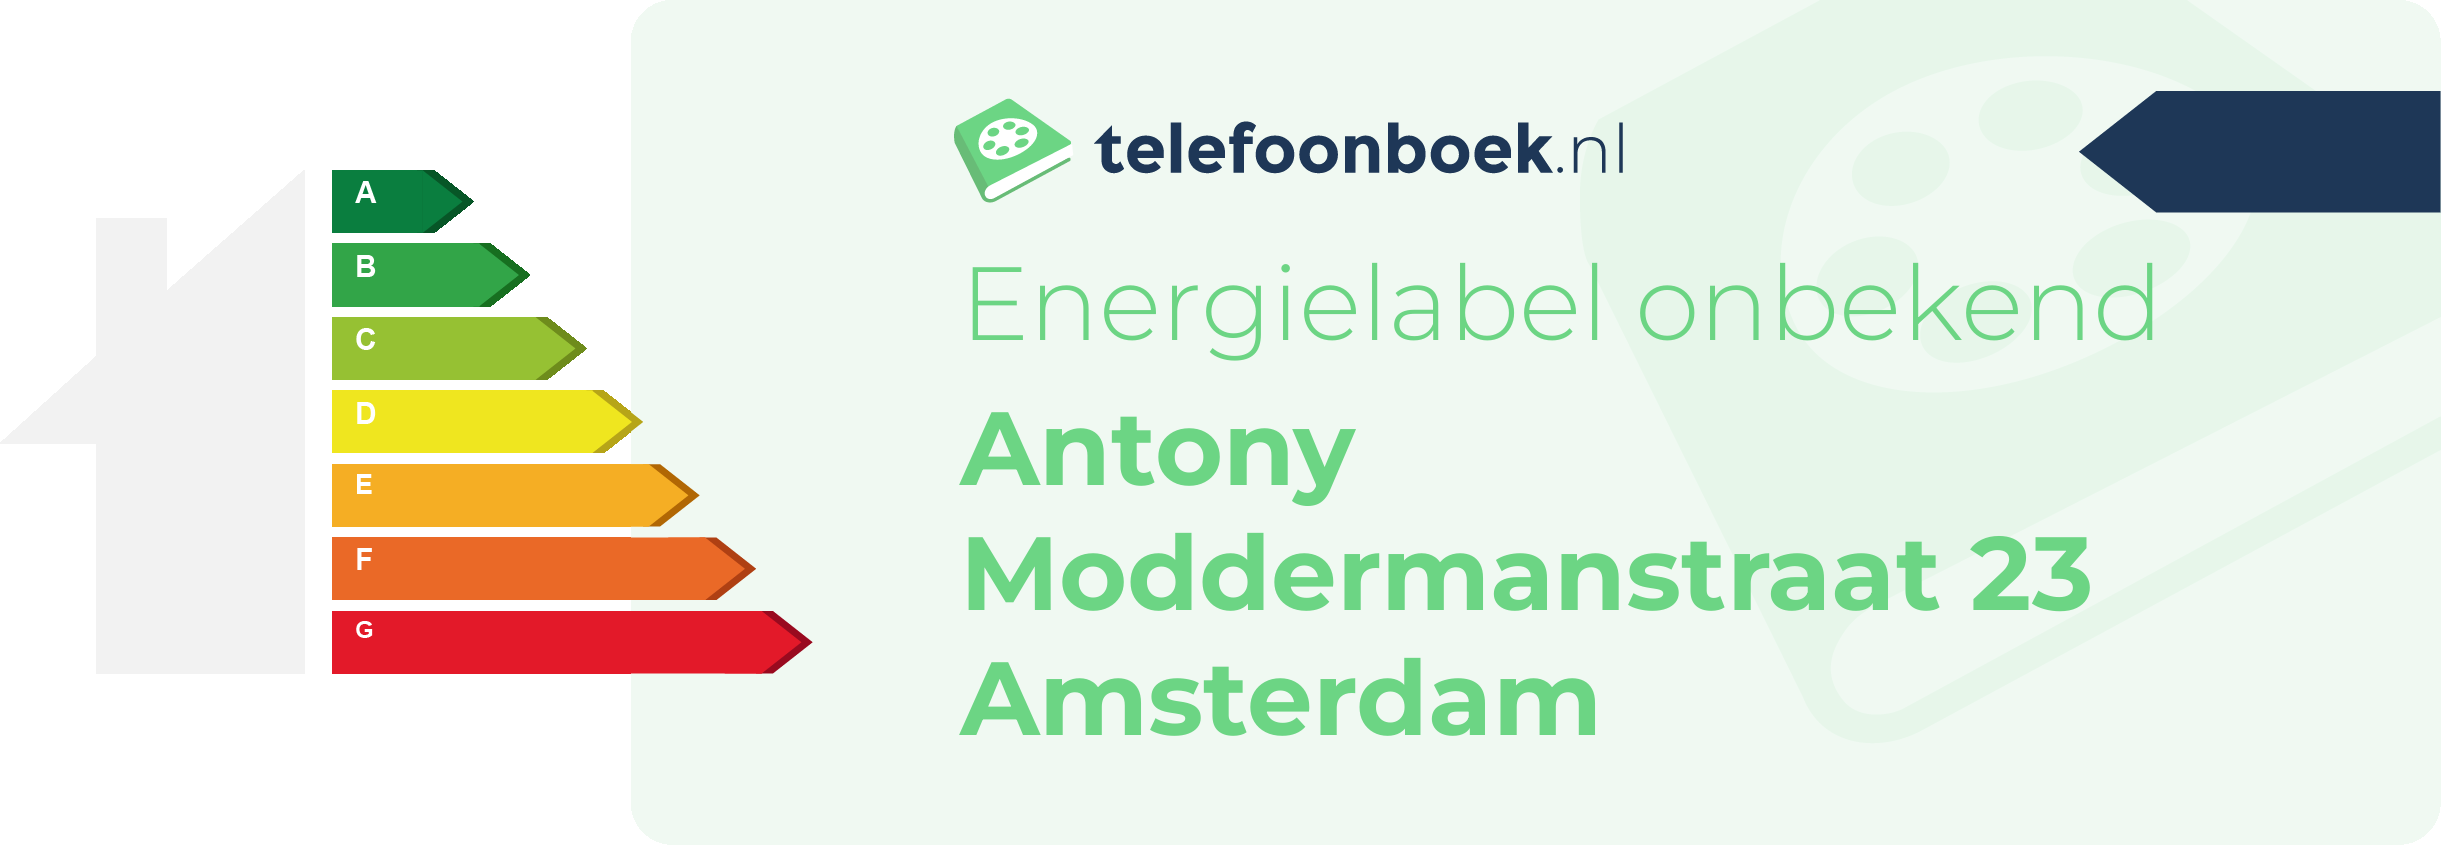 Energielabel Antony Moddermanstraat 23 Amsterdam